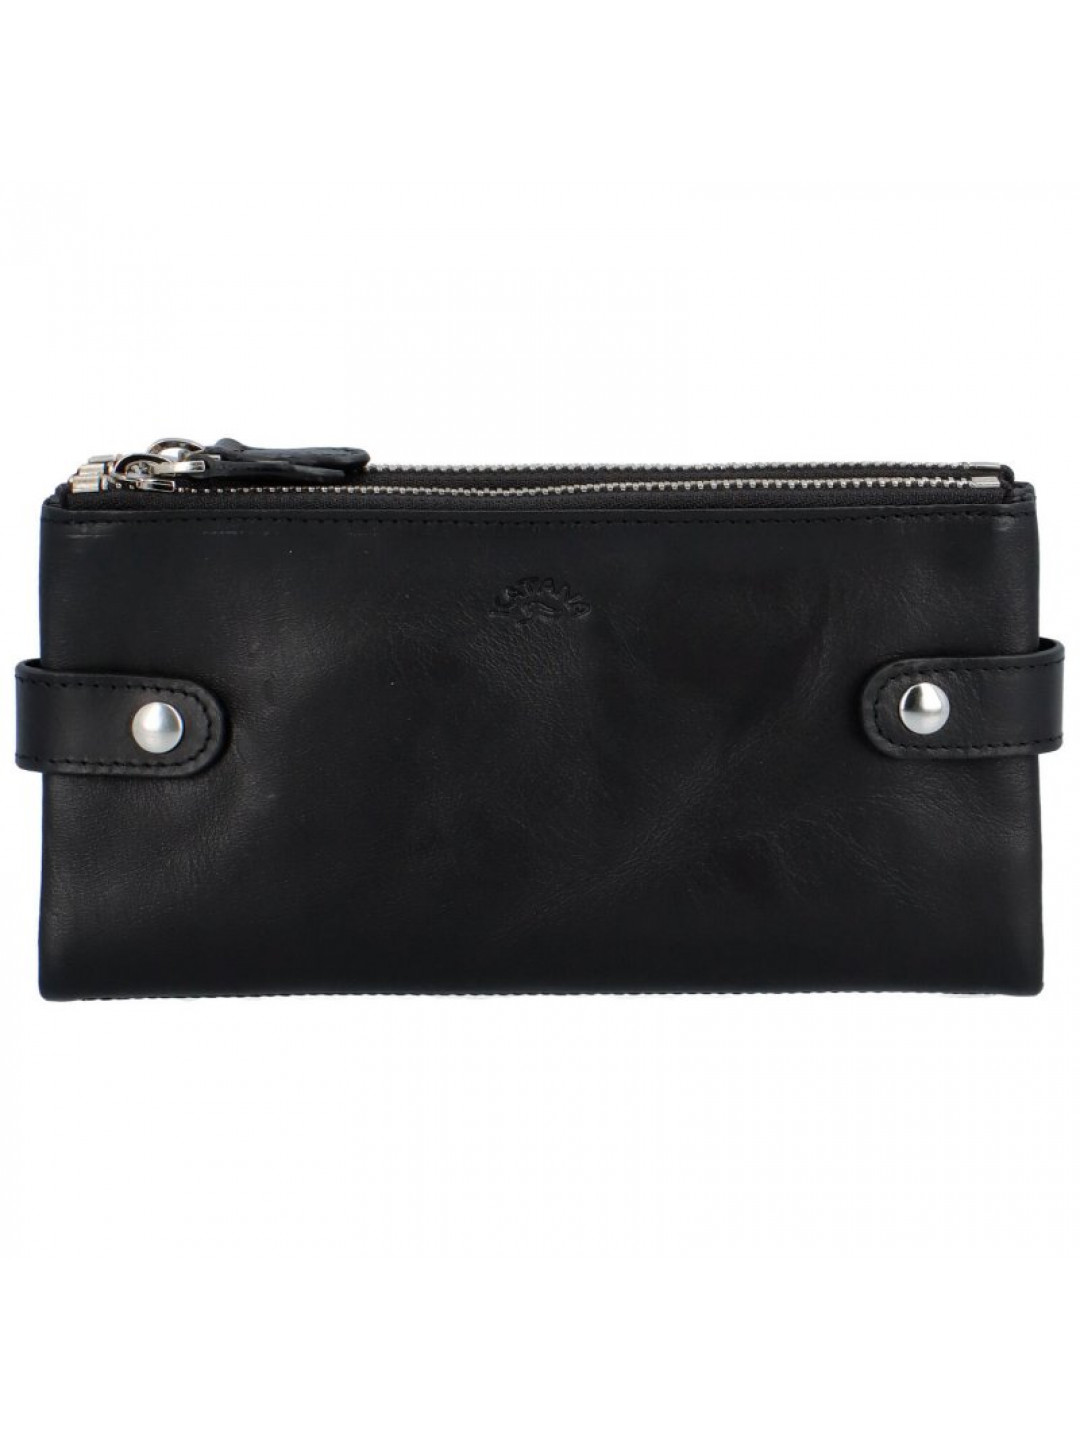 Dámská kožená peněženka černá – Katana K118